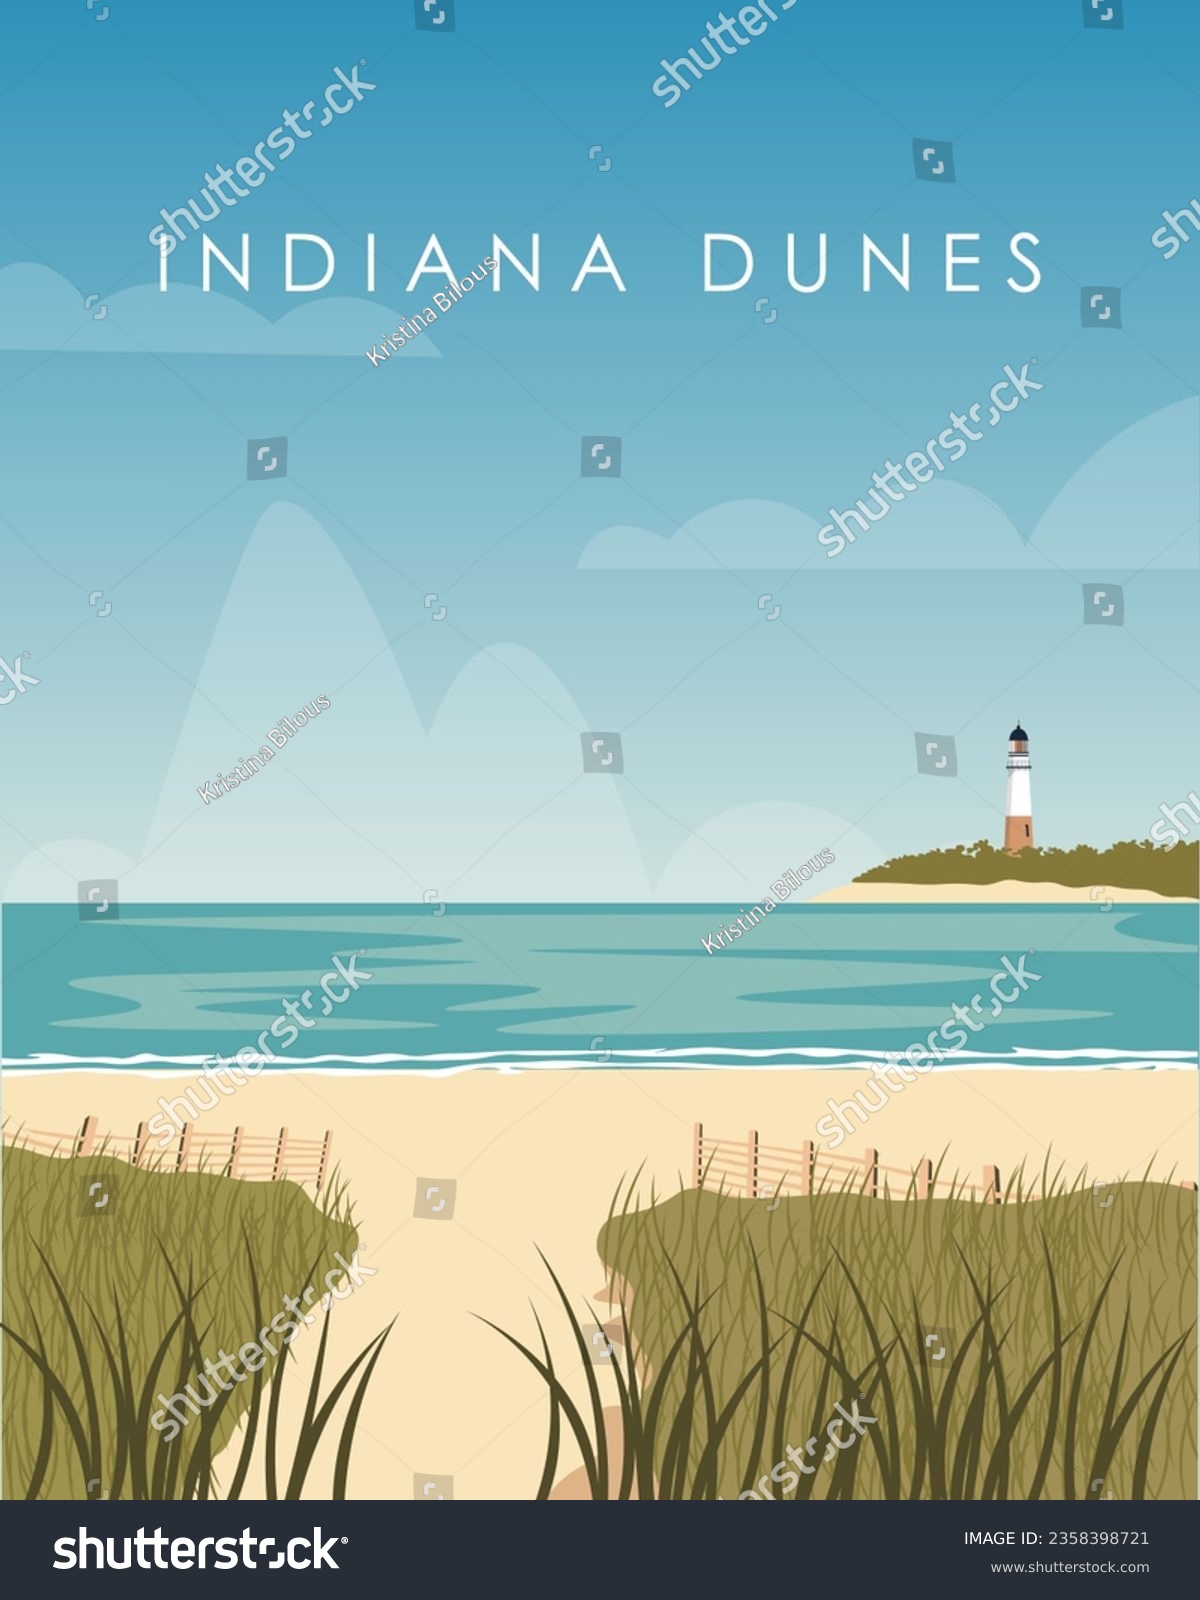 SVG of Vector illustration Indiana Dunes state park. Design for poster, travel postcard, banner, cover. Tourism, travel. svg